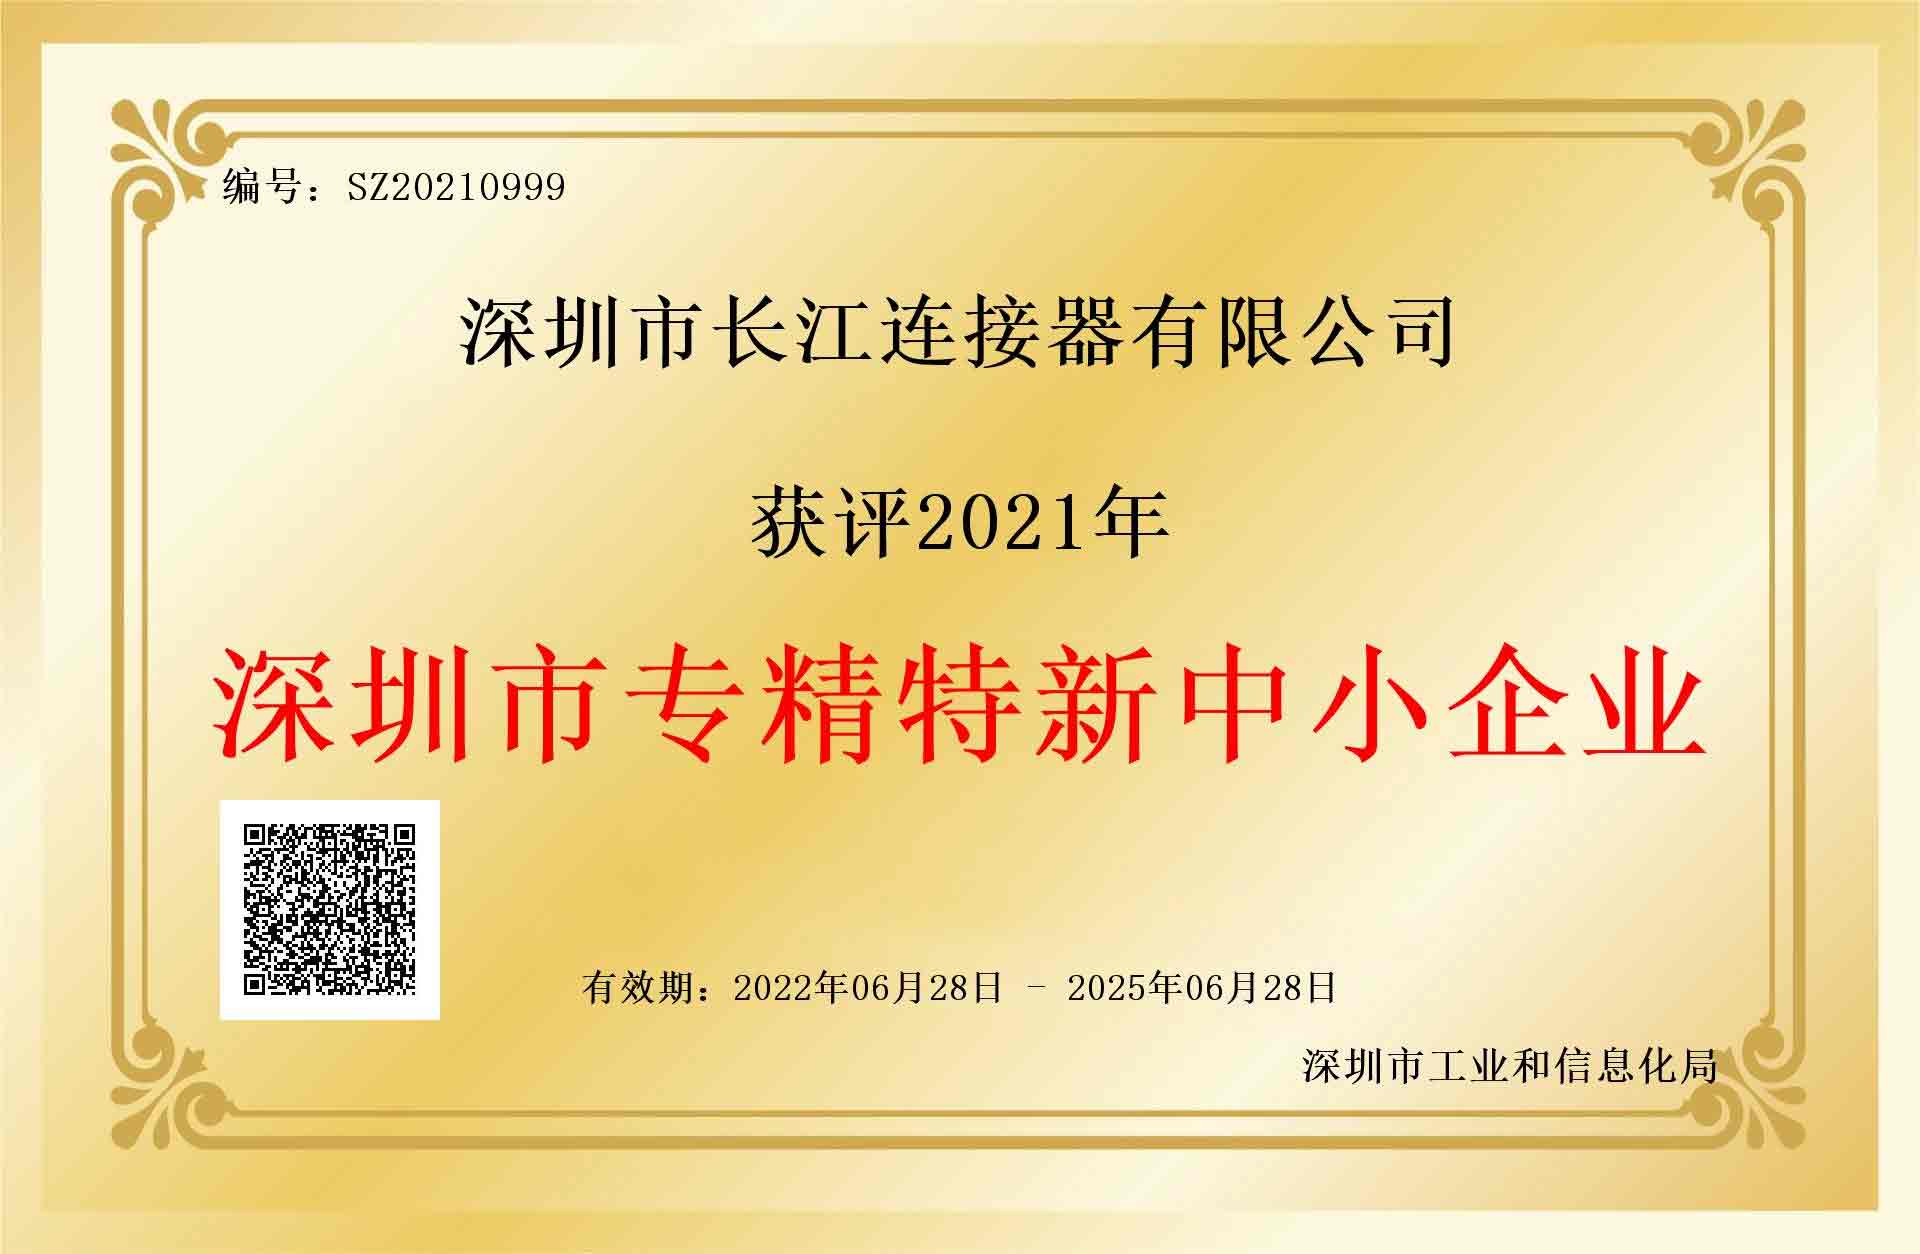 Herzlichen Glückwunsch an Changjiang Connectors zur Auszeichnung des Titels Shenzhen Specialized, Refined und New Small and Medium Enterprise!